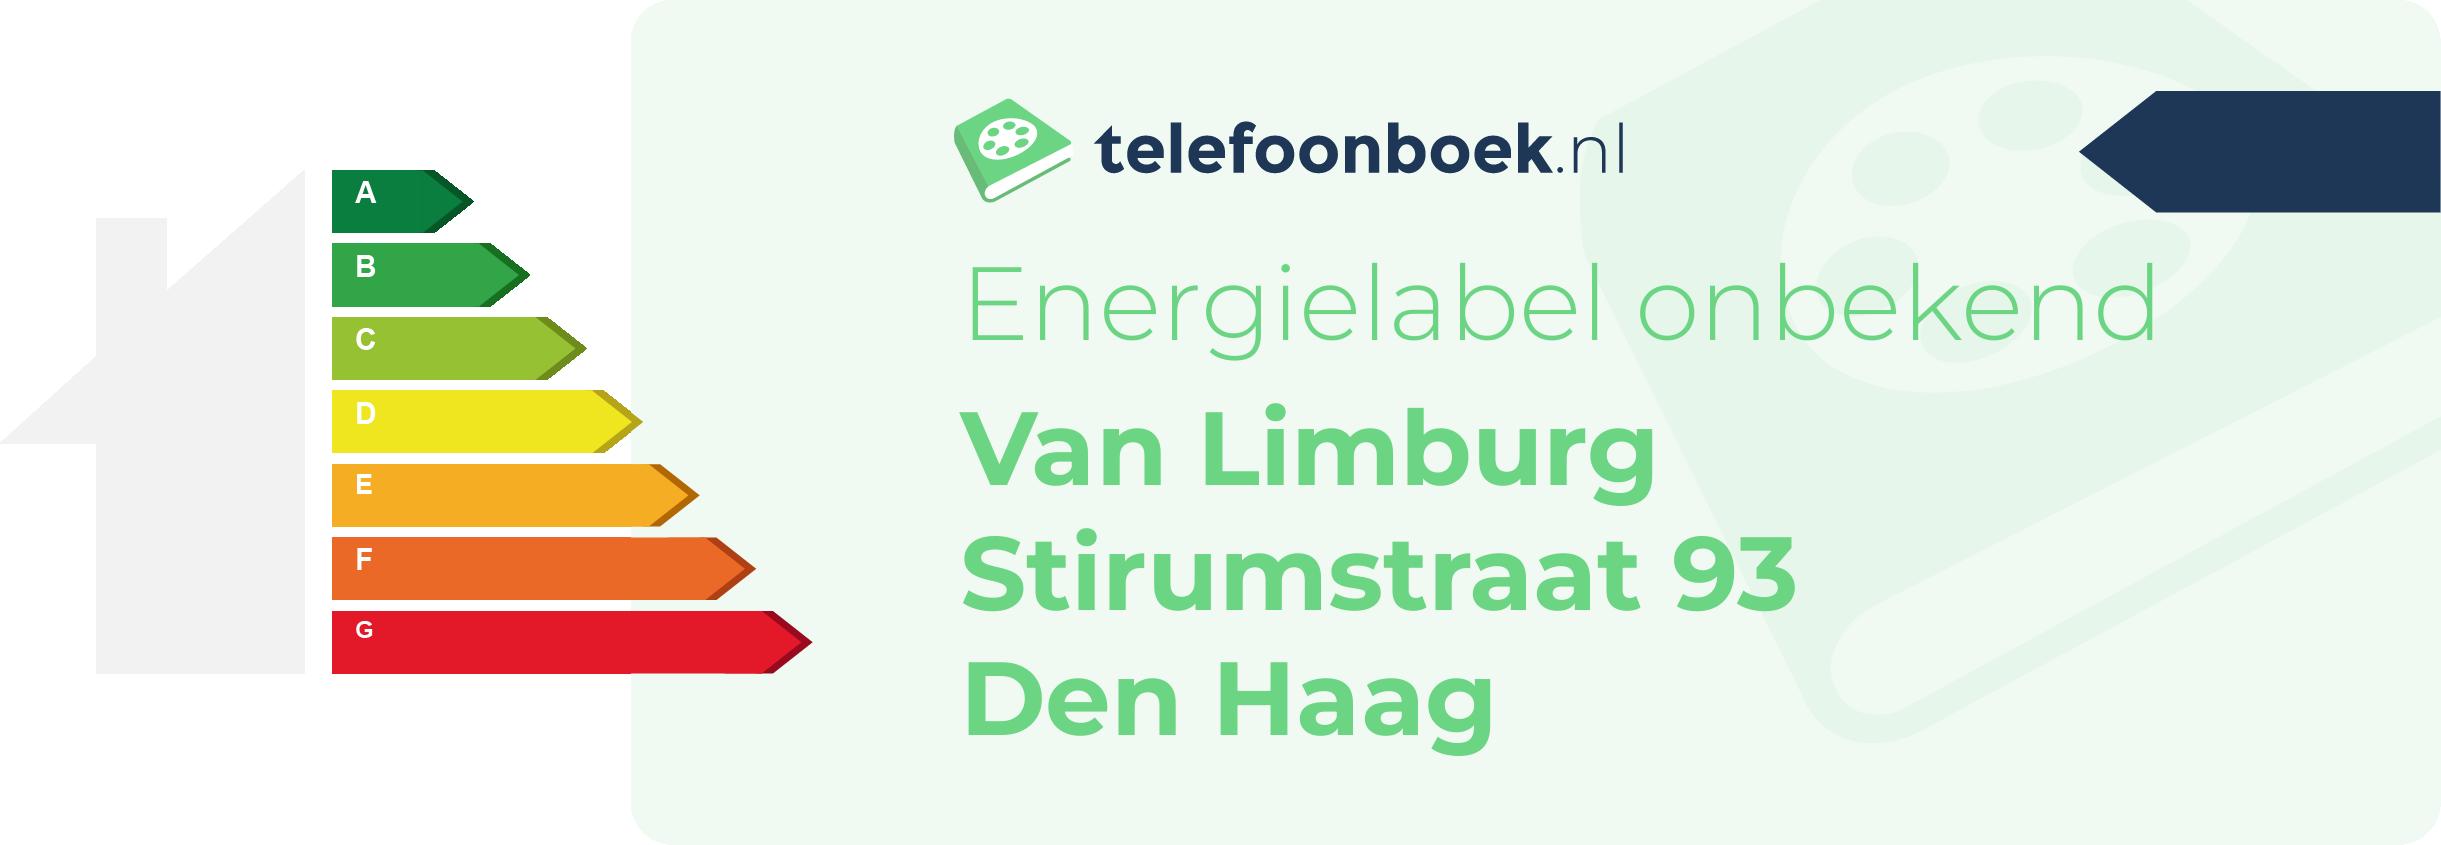 Energielabel Van Limburg Stirumstraat 93 Den Haag